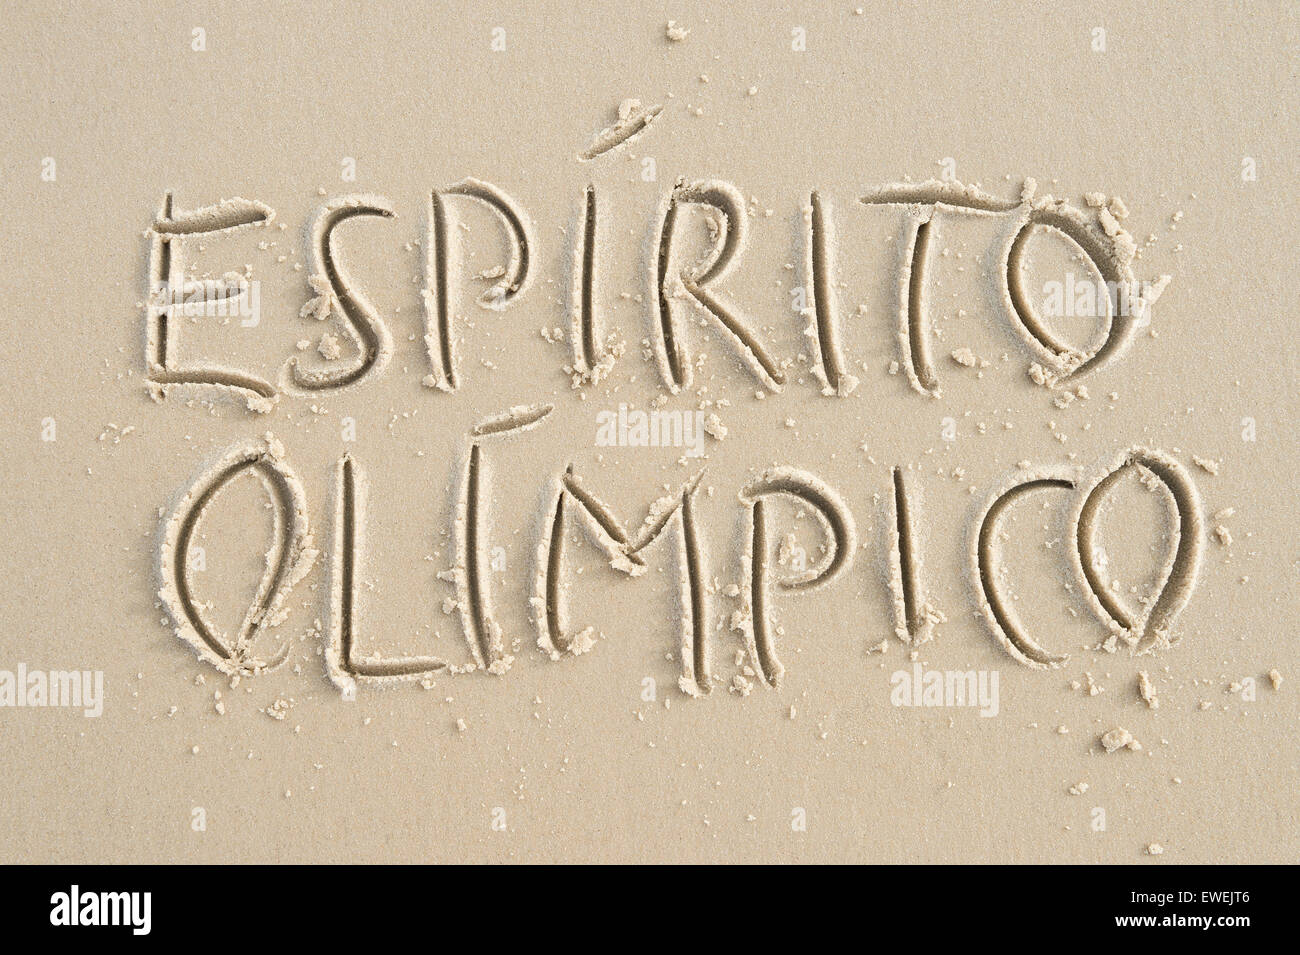 RIO DE JANEIRO, Brasile - 20 Marzo 2015: Semplice Espirito Olimpico [Traduzione: lo spirito olimpico] messaggio scritta a mano nella sabbia. Foto Stock